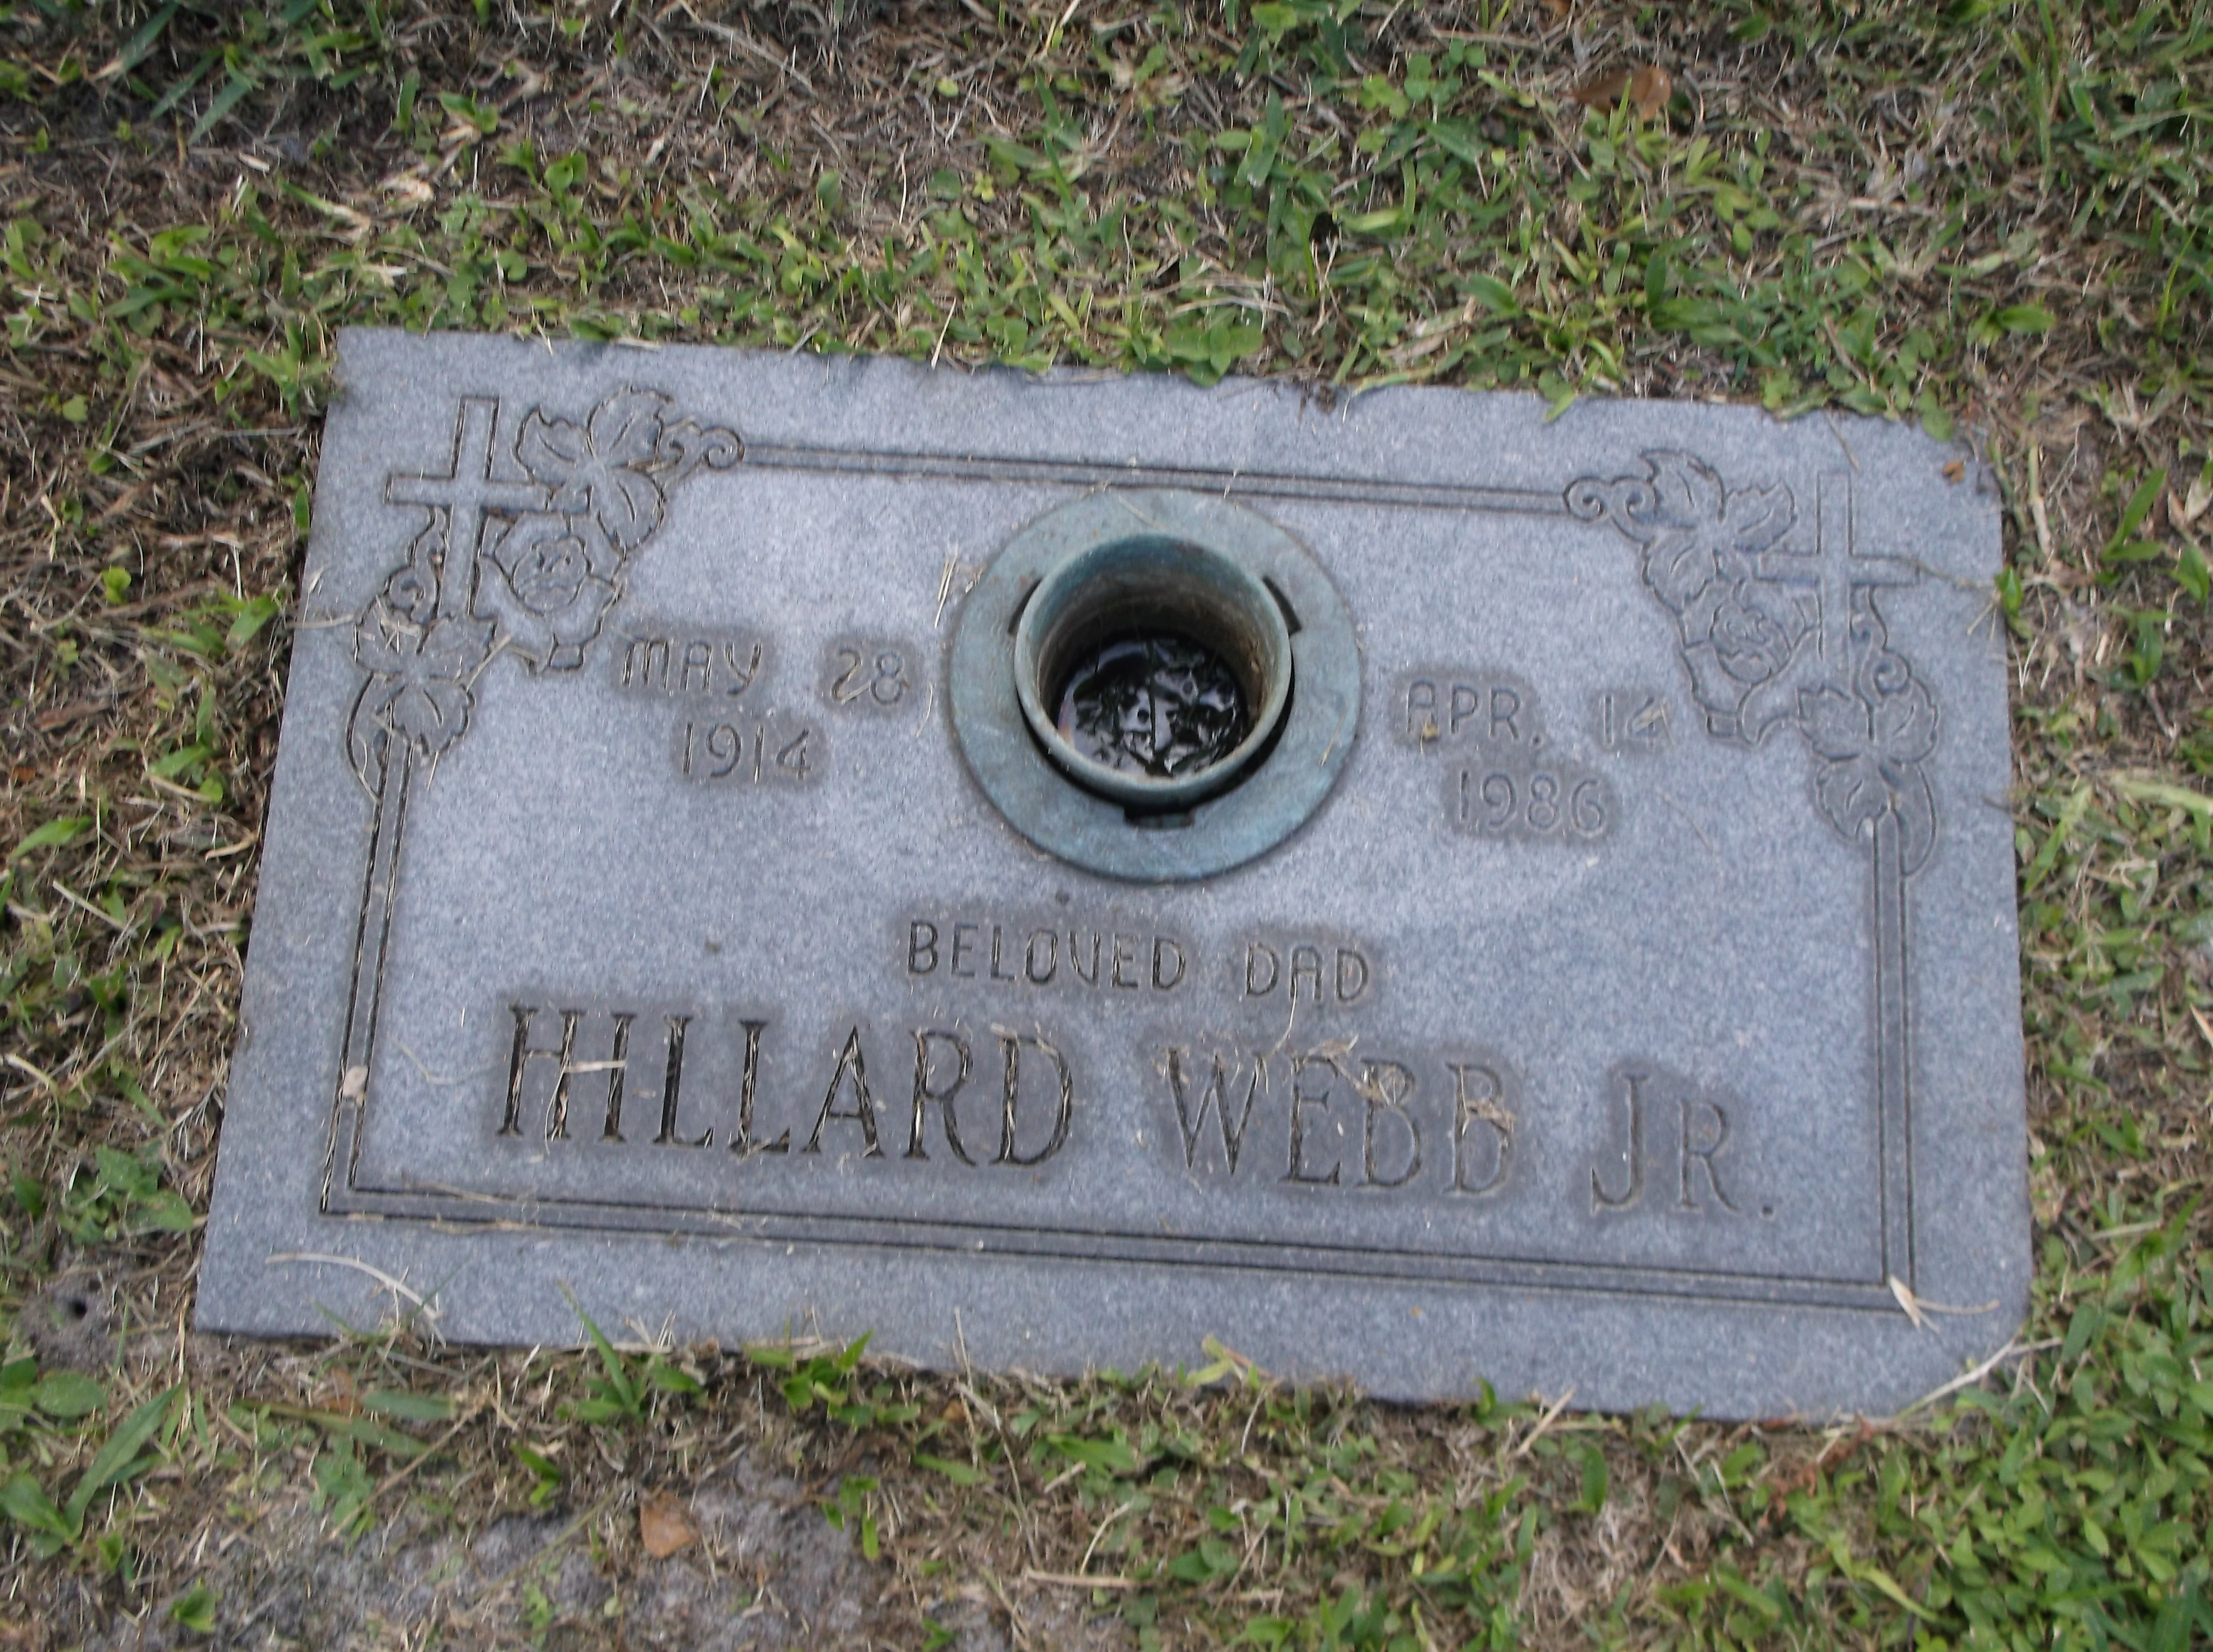 Hillard Webb, Jr